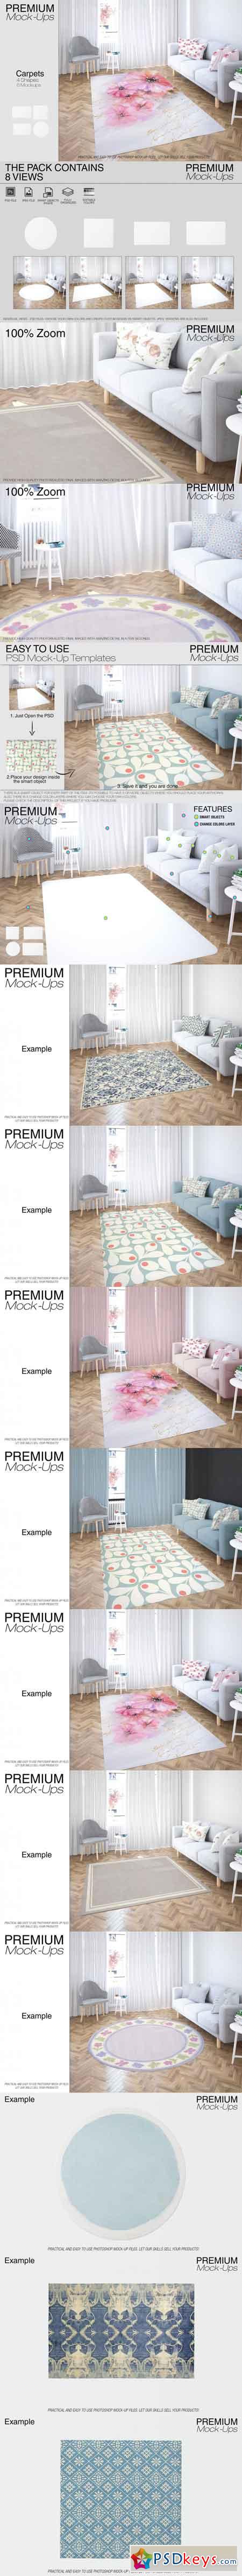 Carpets in Living Room Mockup Set 3466247